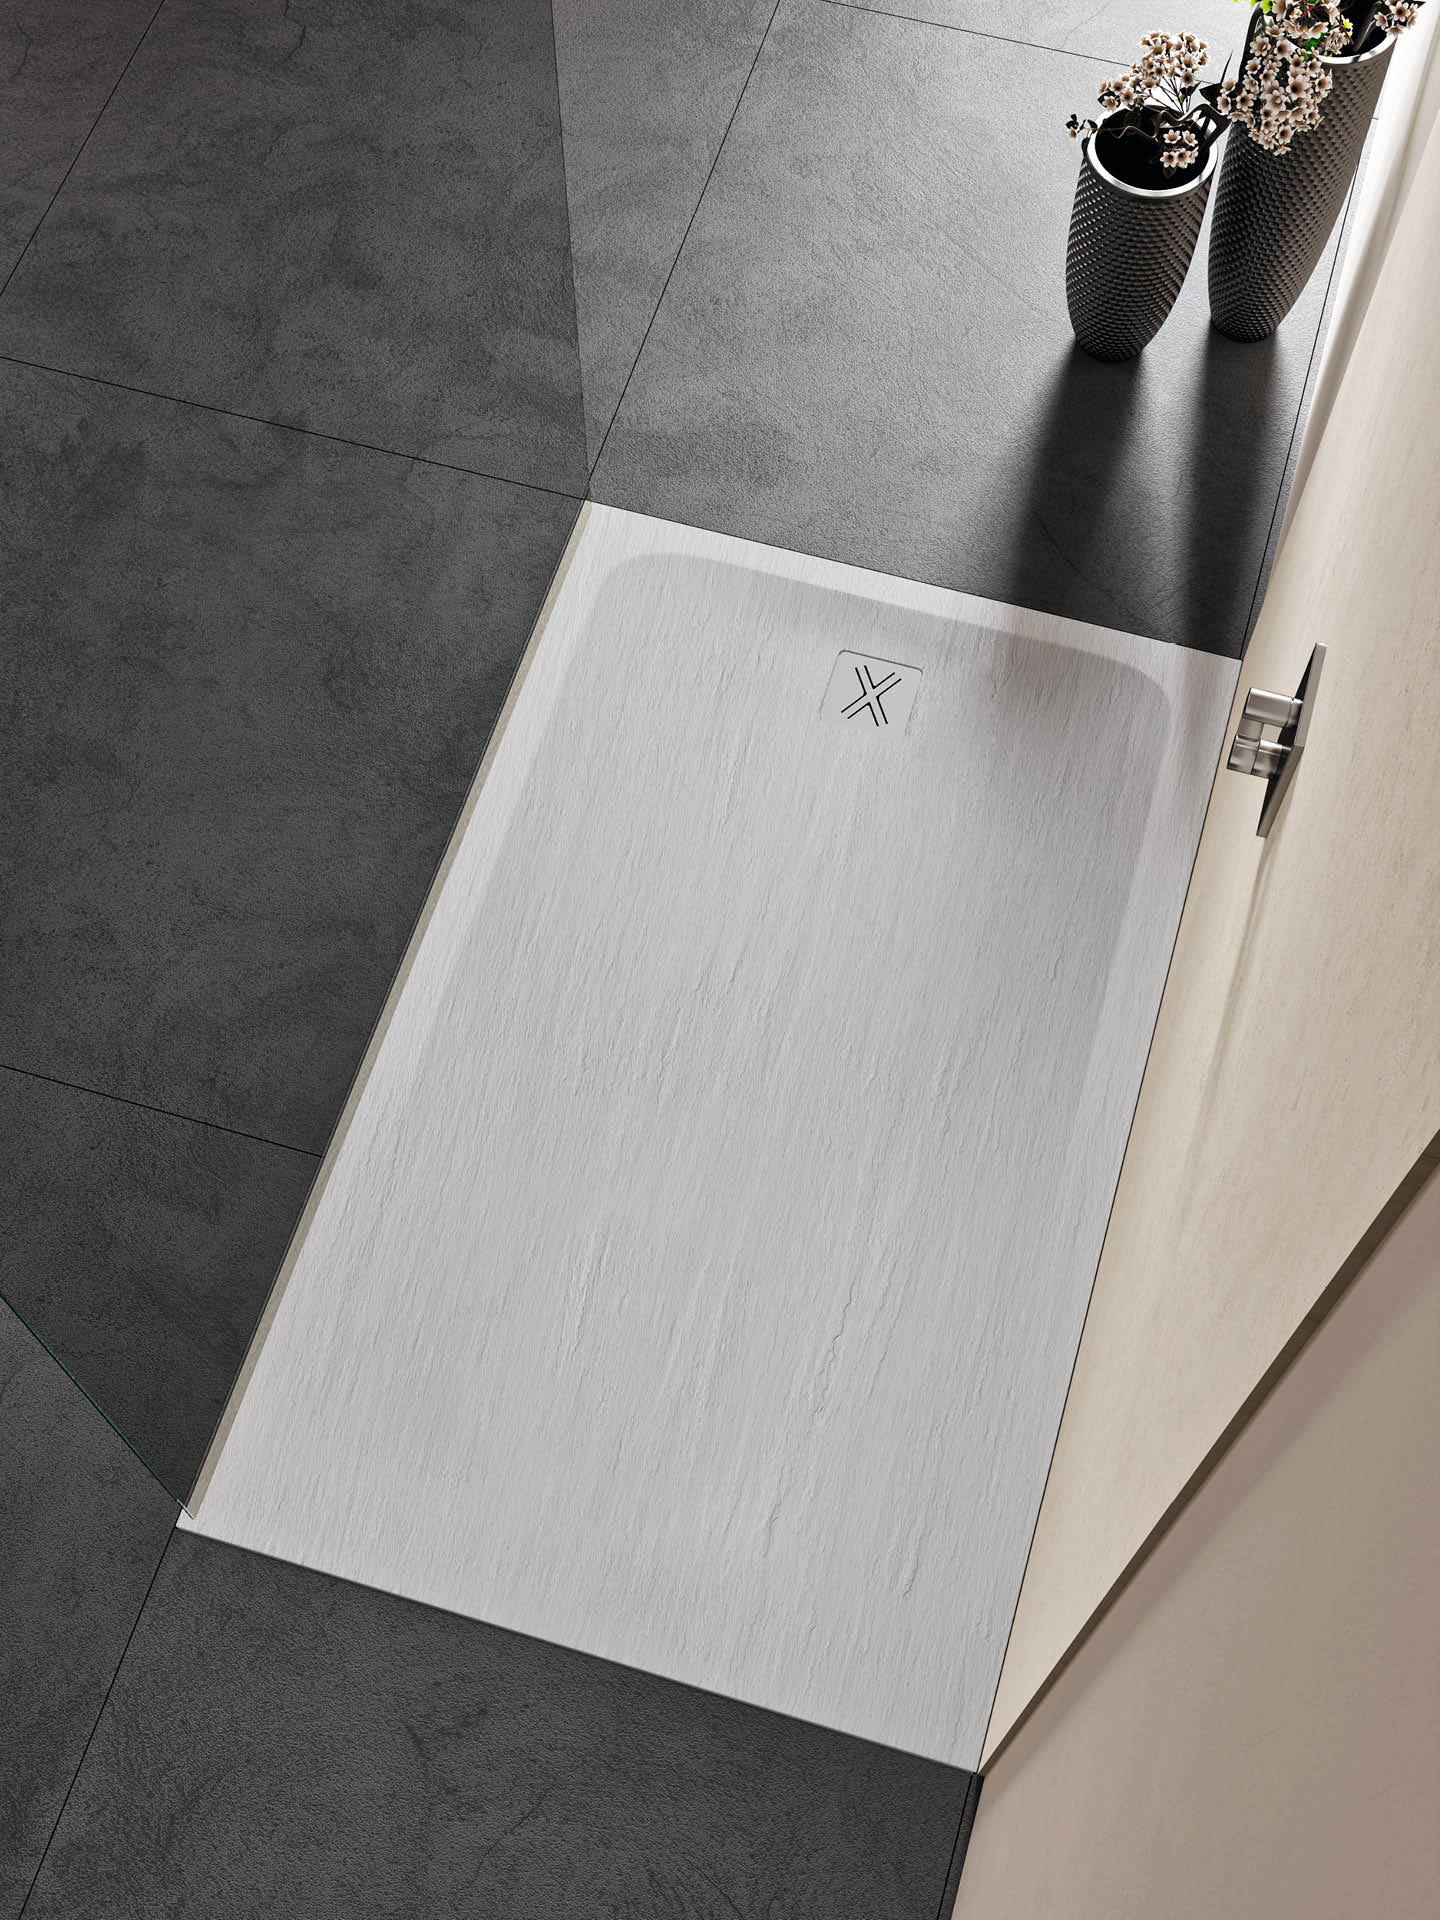 piatto doccia bianco rettangolare a filo pavimento raso con effetto ardesia